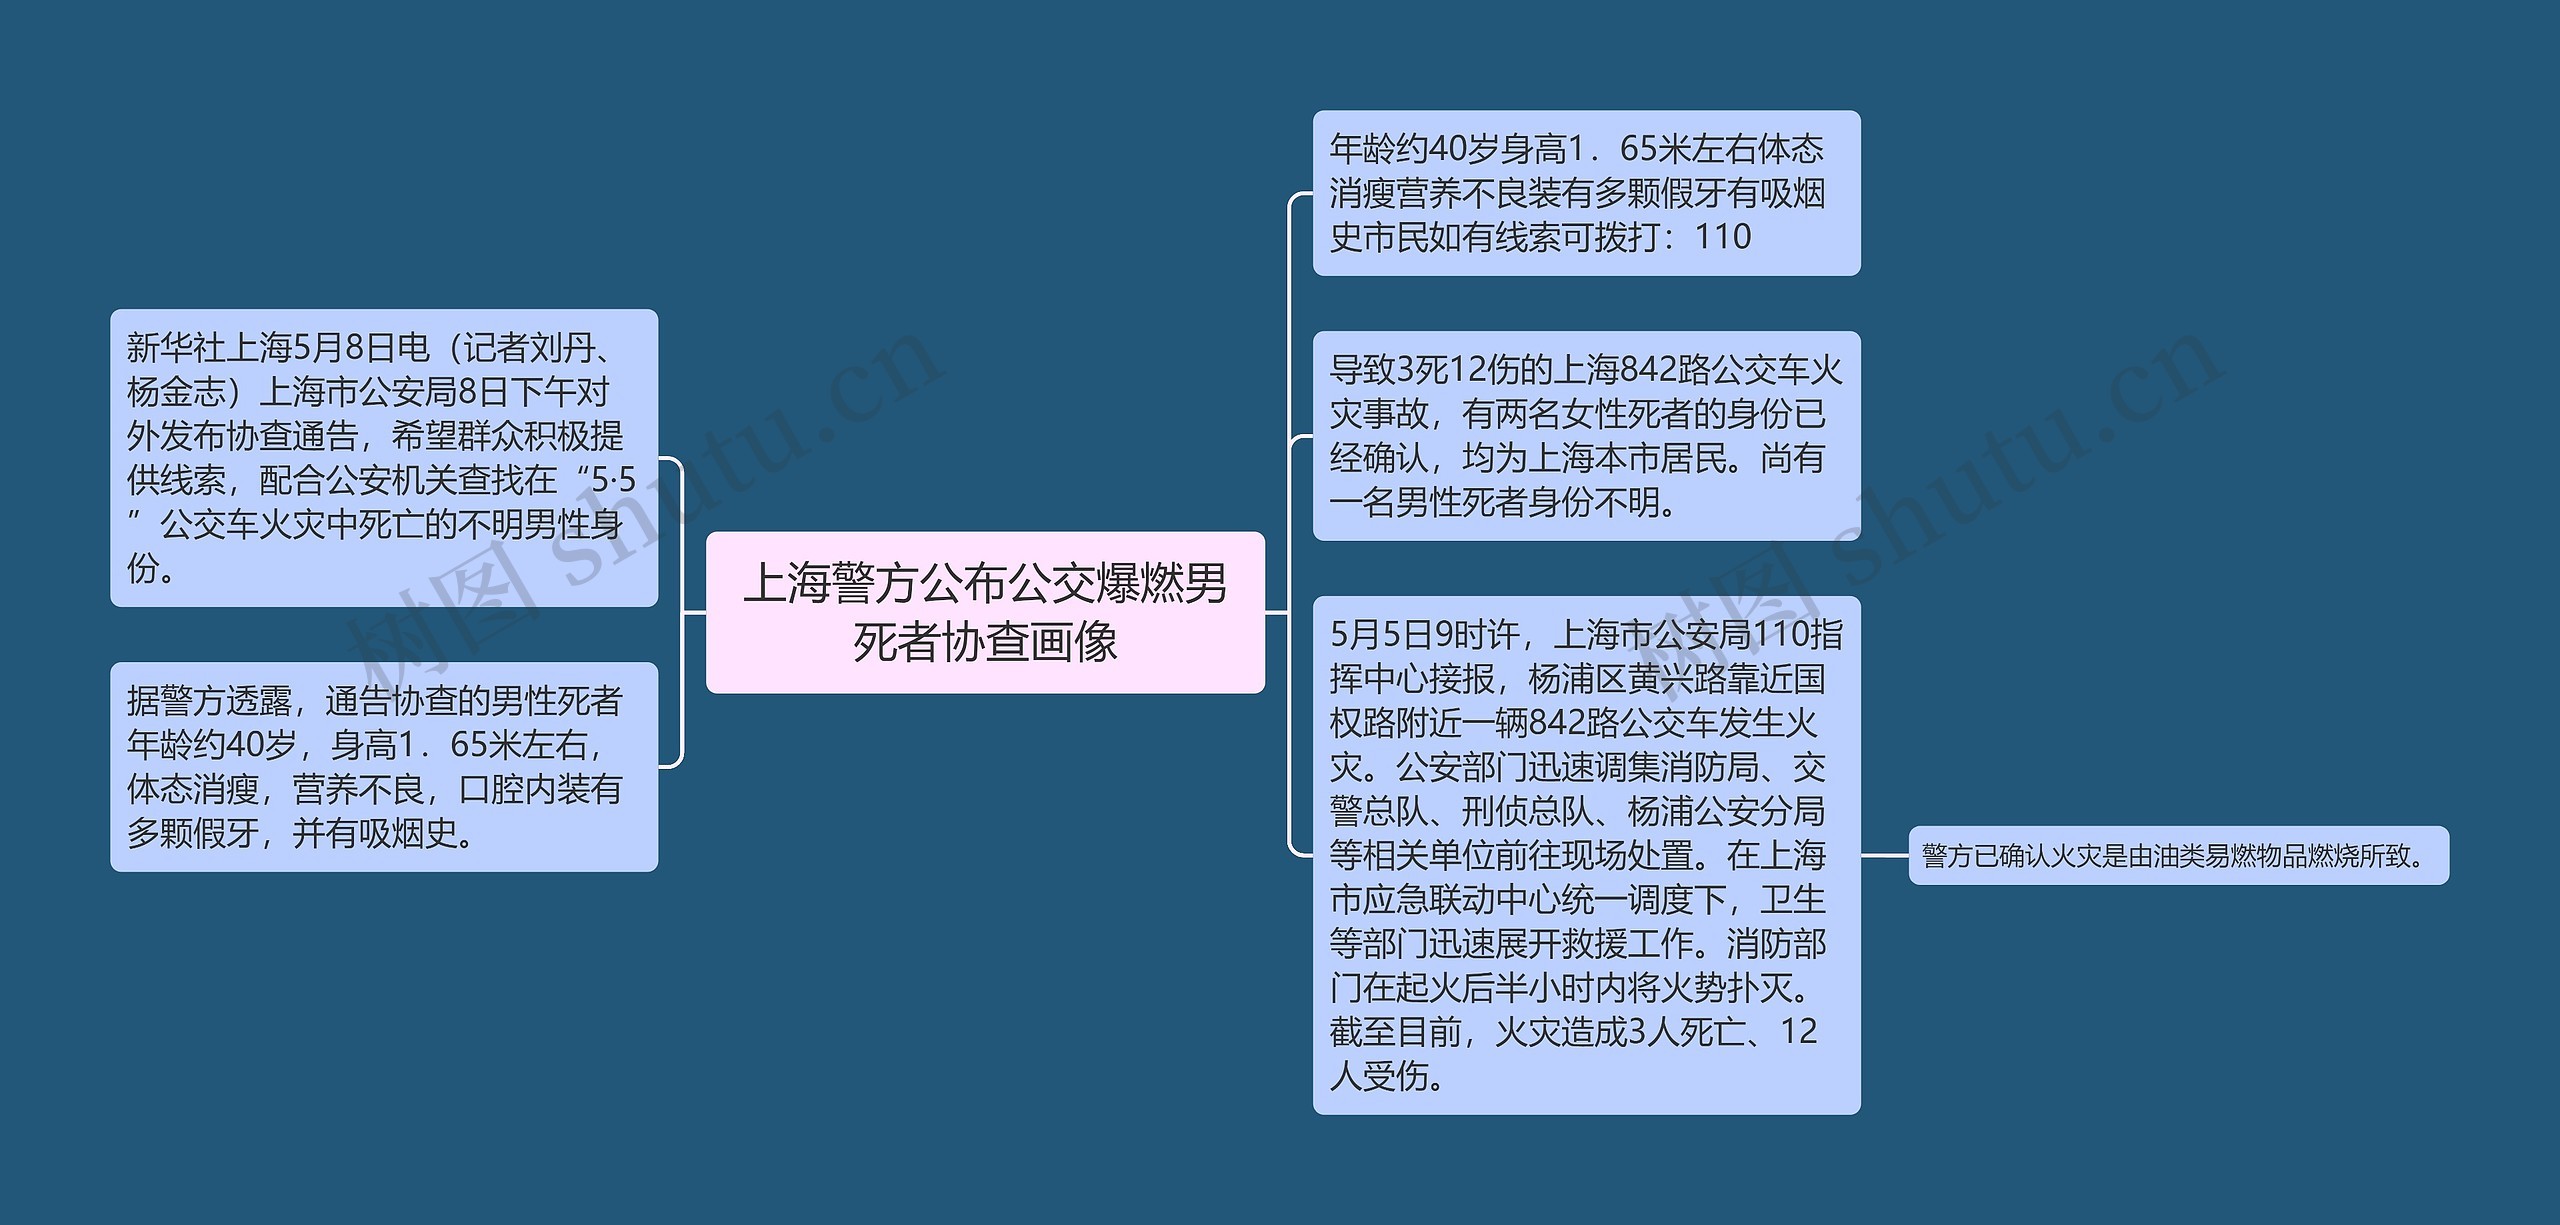 上海警方公布公交爆燃男死者协查画像